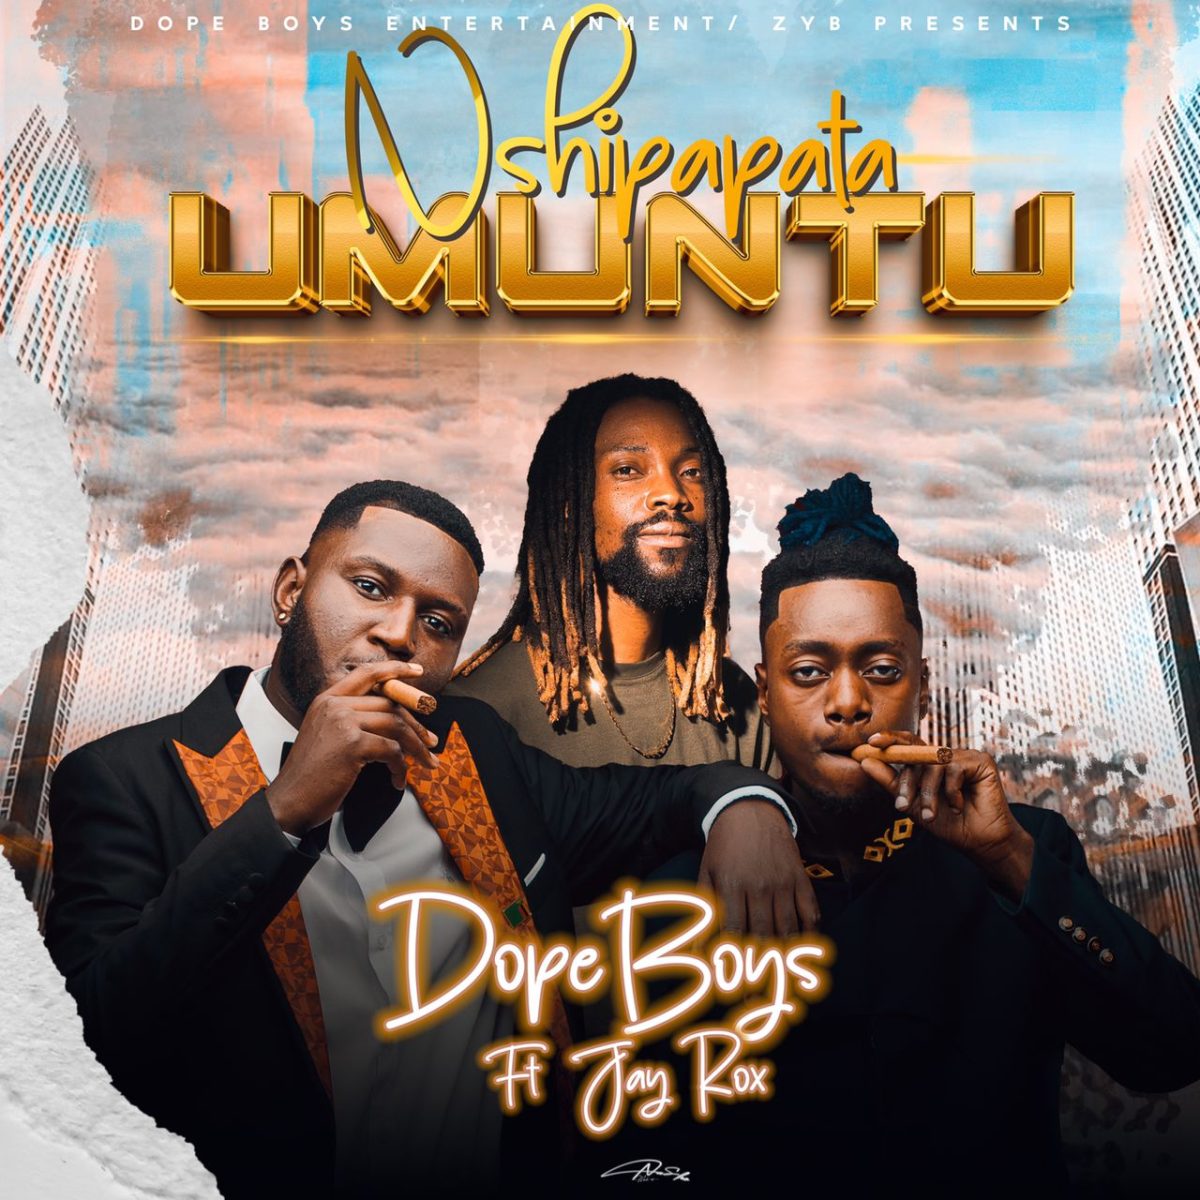 Dope Boys ft. Jay Rox - Nshipapata Umuntu